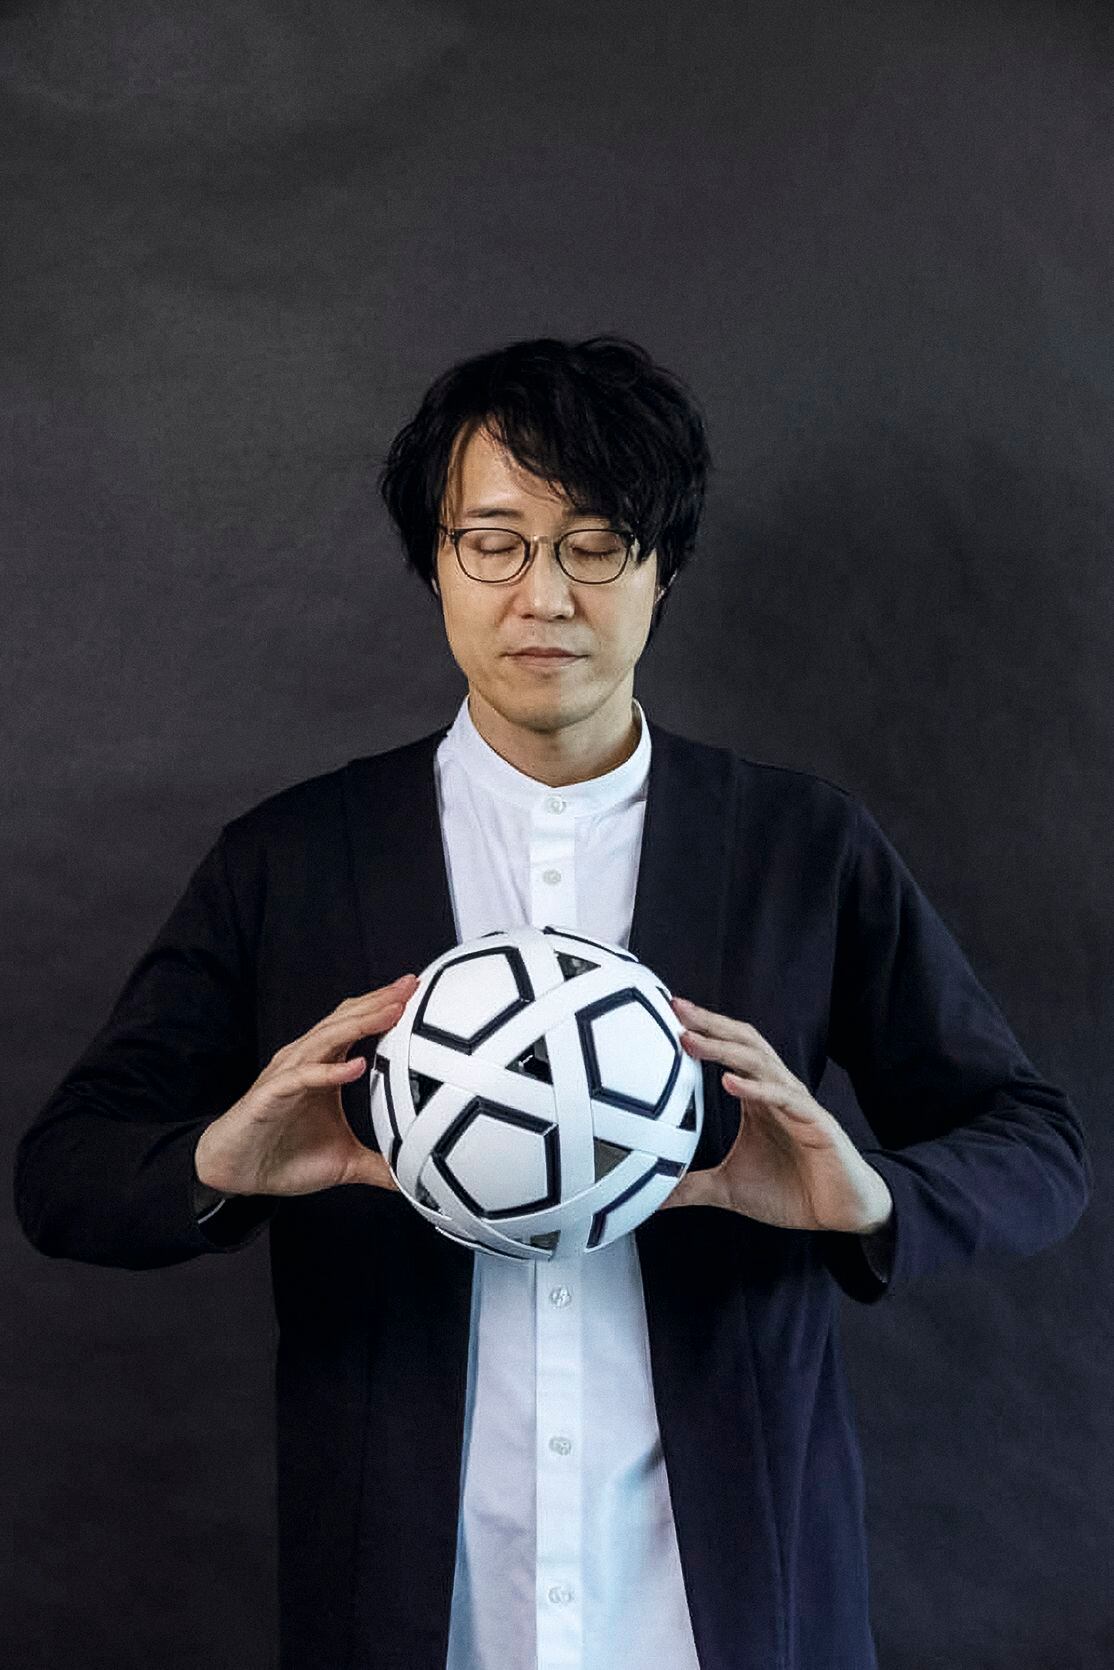 Sato sostiene el balón My Football Kit, compuesto de 54 piezas fáciles de armar y almacenar. Fue diseñado para popularizar el deporte en países pobres y varias empresas japonesas lo donan a escuelas, clubes e instituciones.